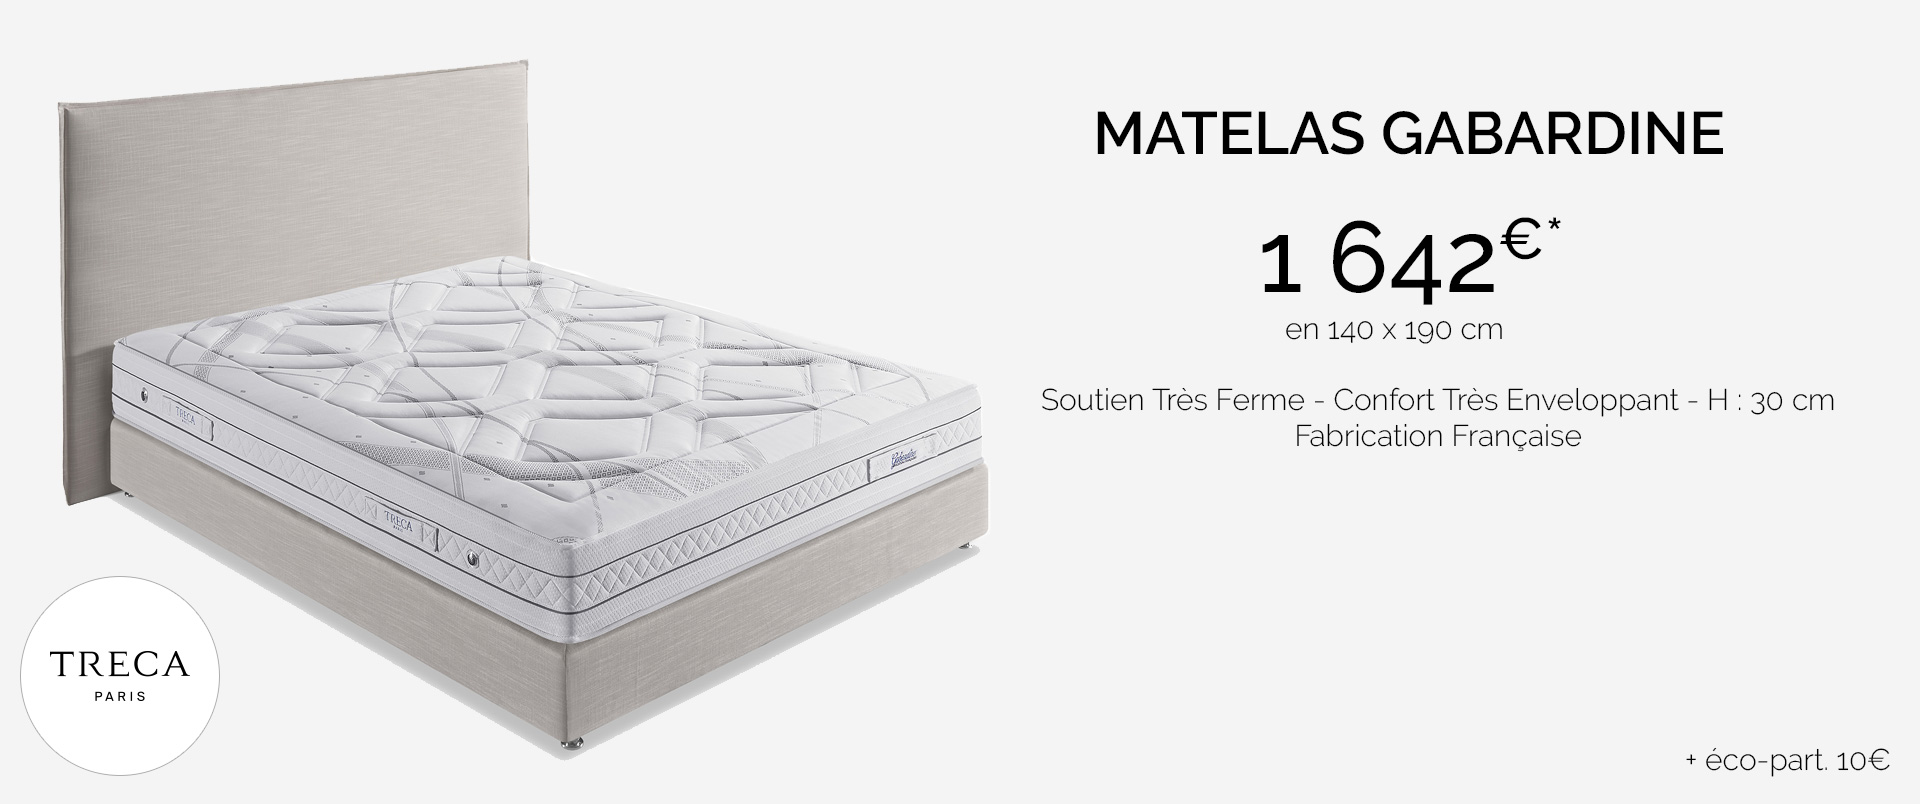 Treca matelas Gabardine Soutien Très Ferme - Confort Très Enveloppant - H : 30 cm Fabrication Française